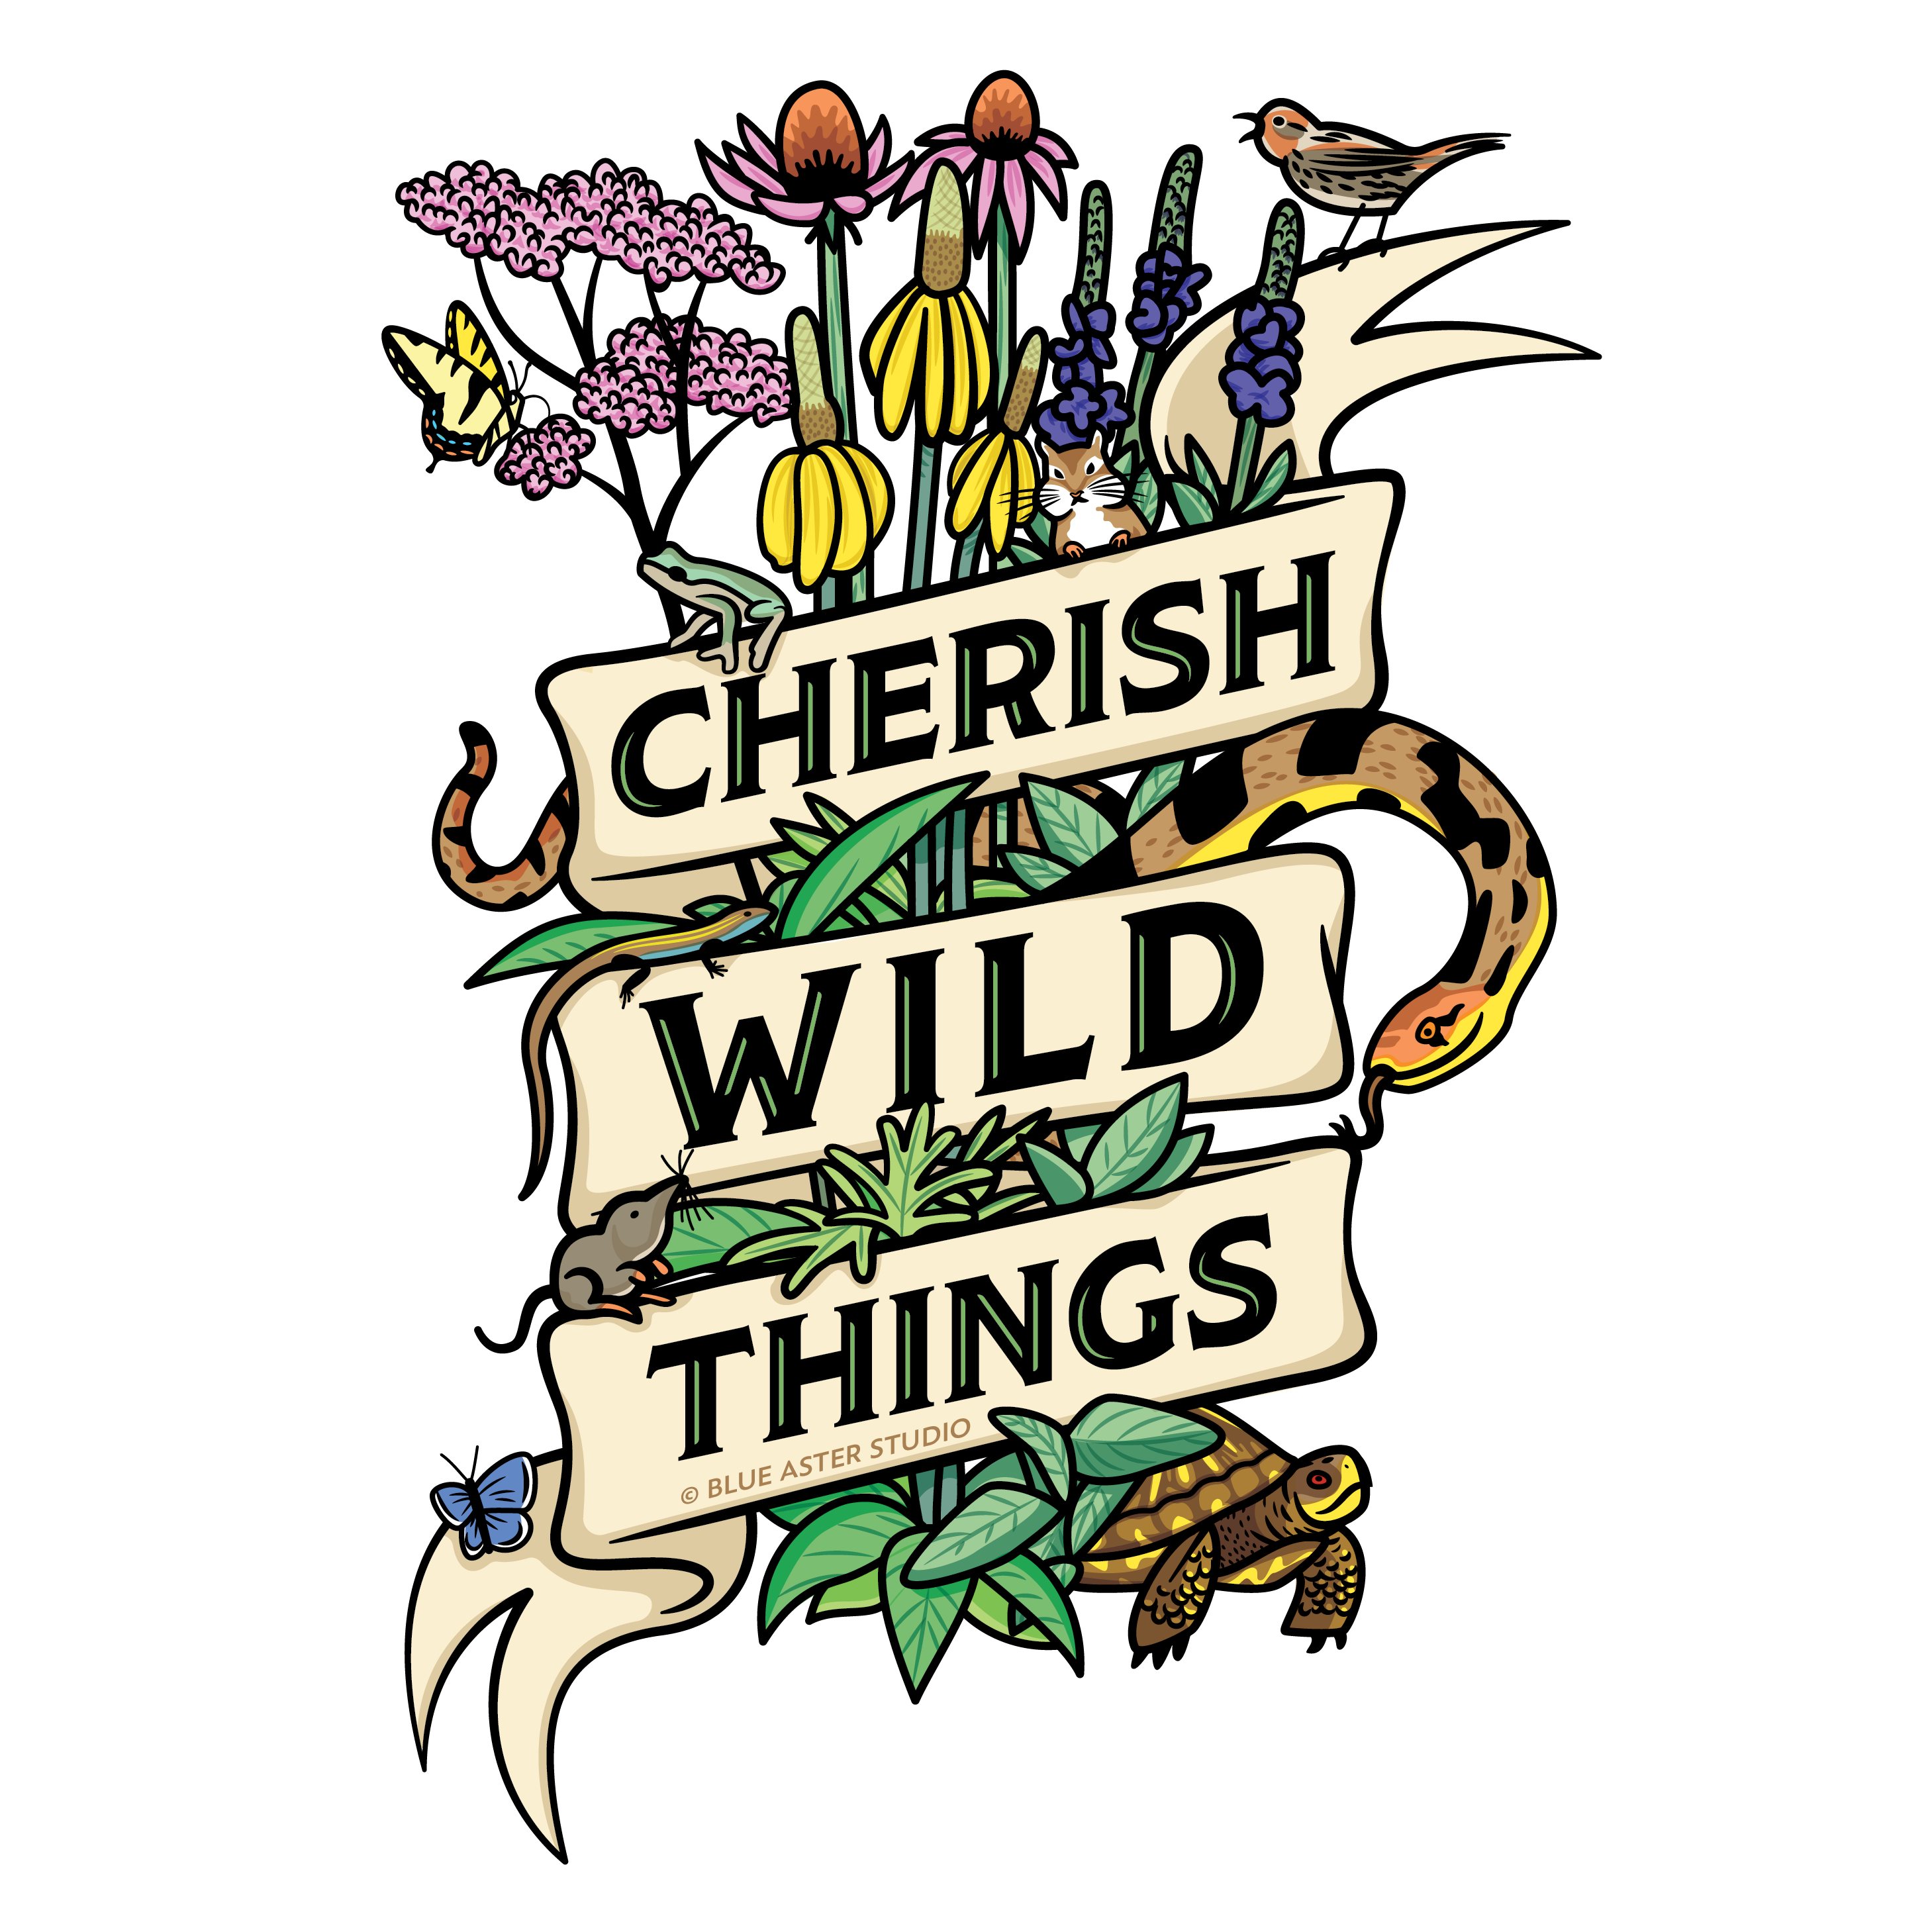 Cherish Wild Things Sticker